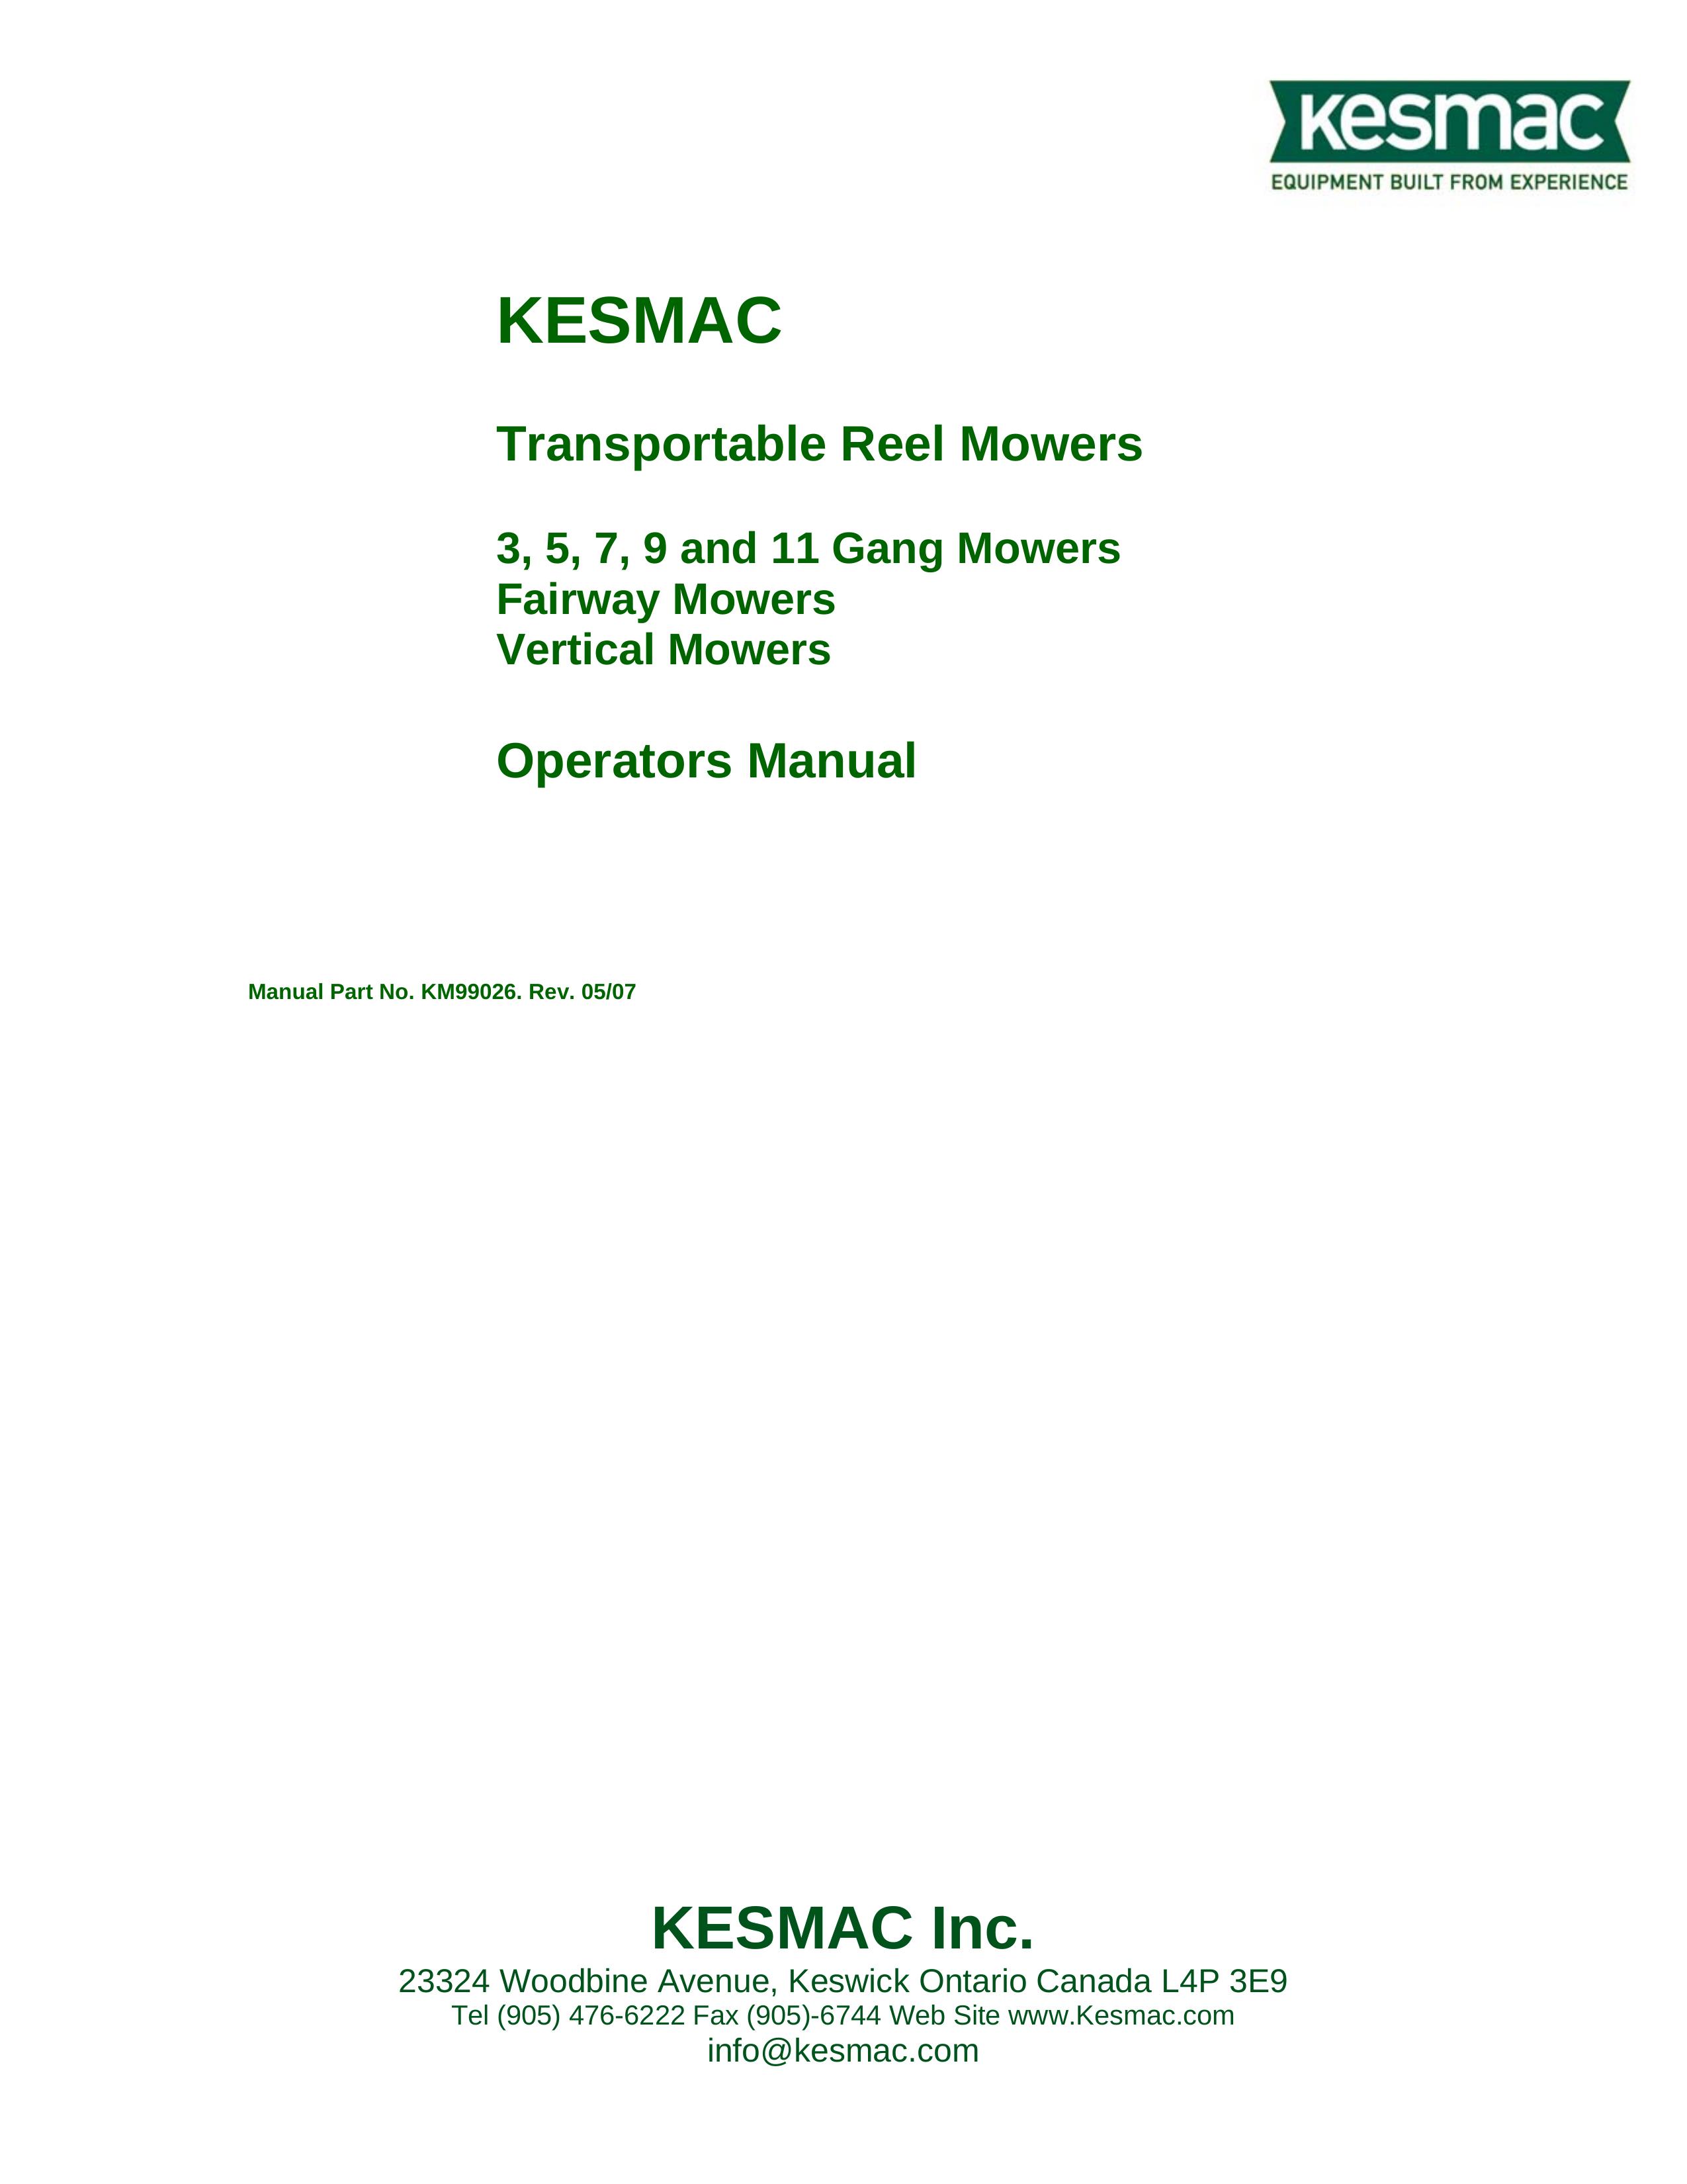 Kenmore 3 Lawn Mower User Manual